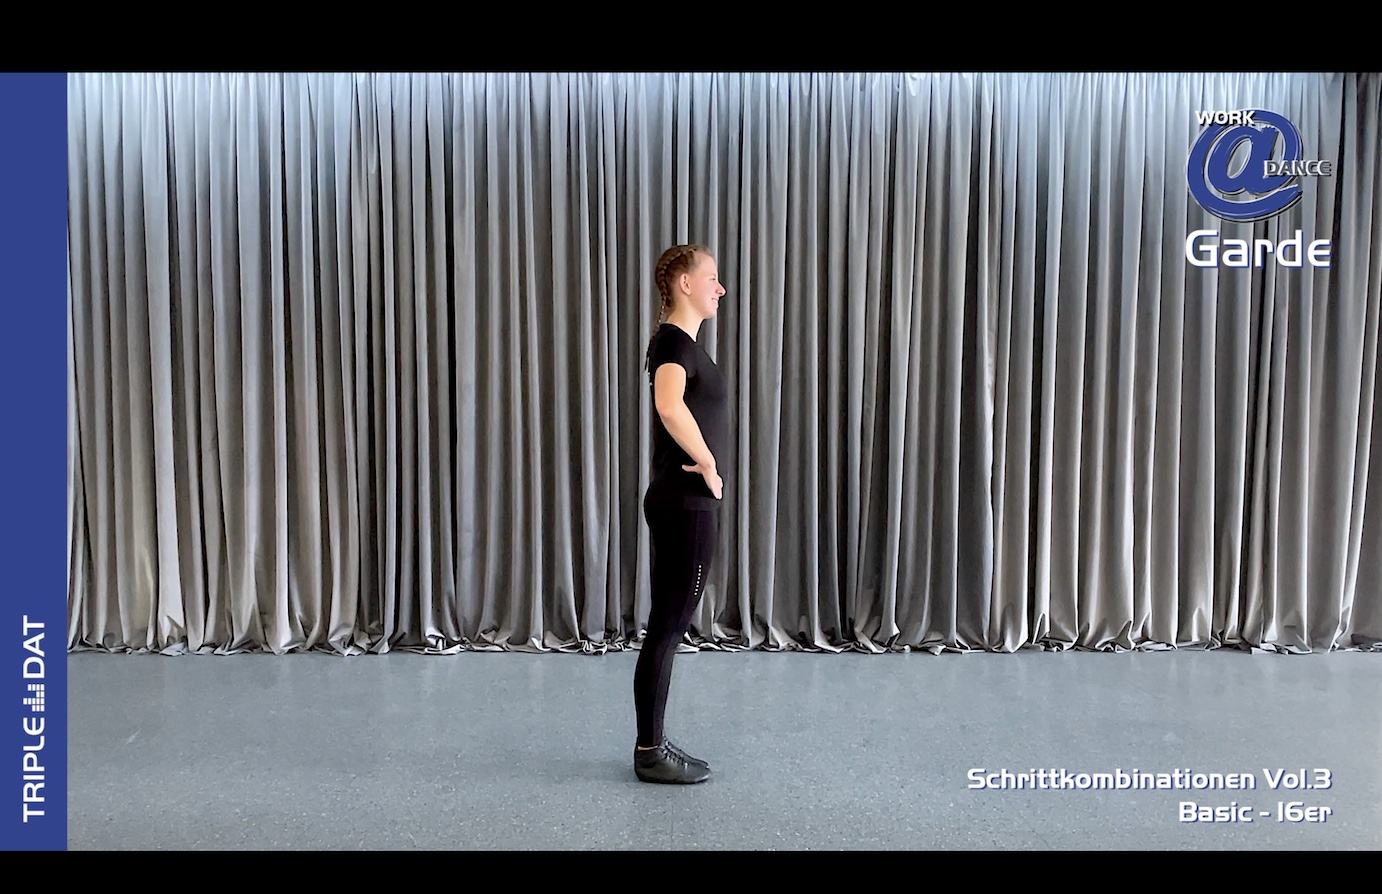 Work@Dance Garde Schrittkombinationen 03 - Basic